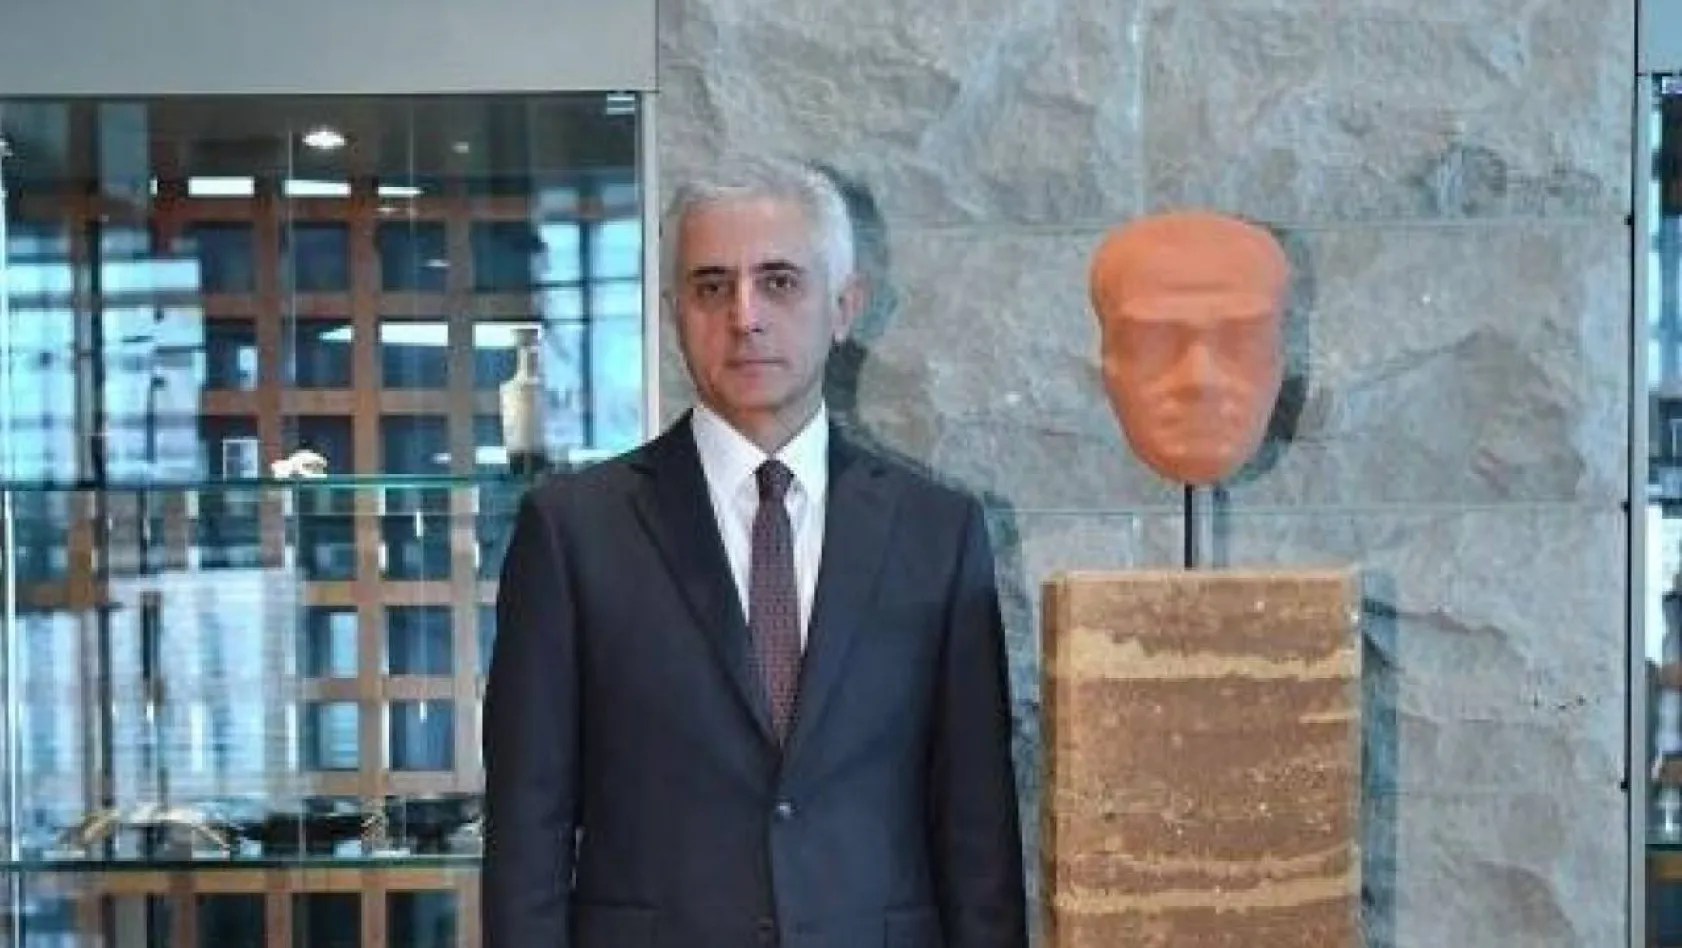 Garanti BBVA, Cumhuriyet'in 100. yılını özel tasarlanan heykellerle kutluyor